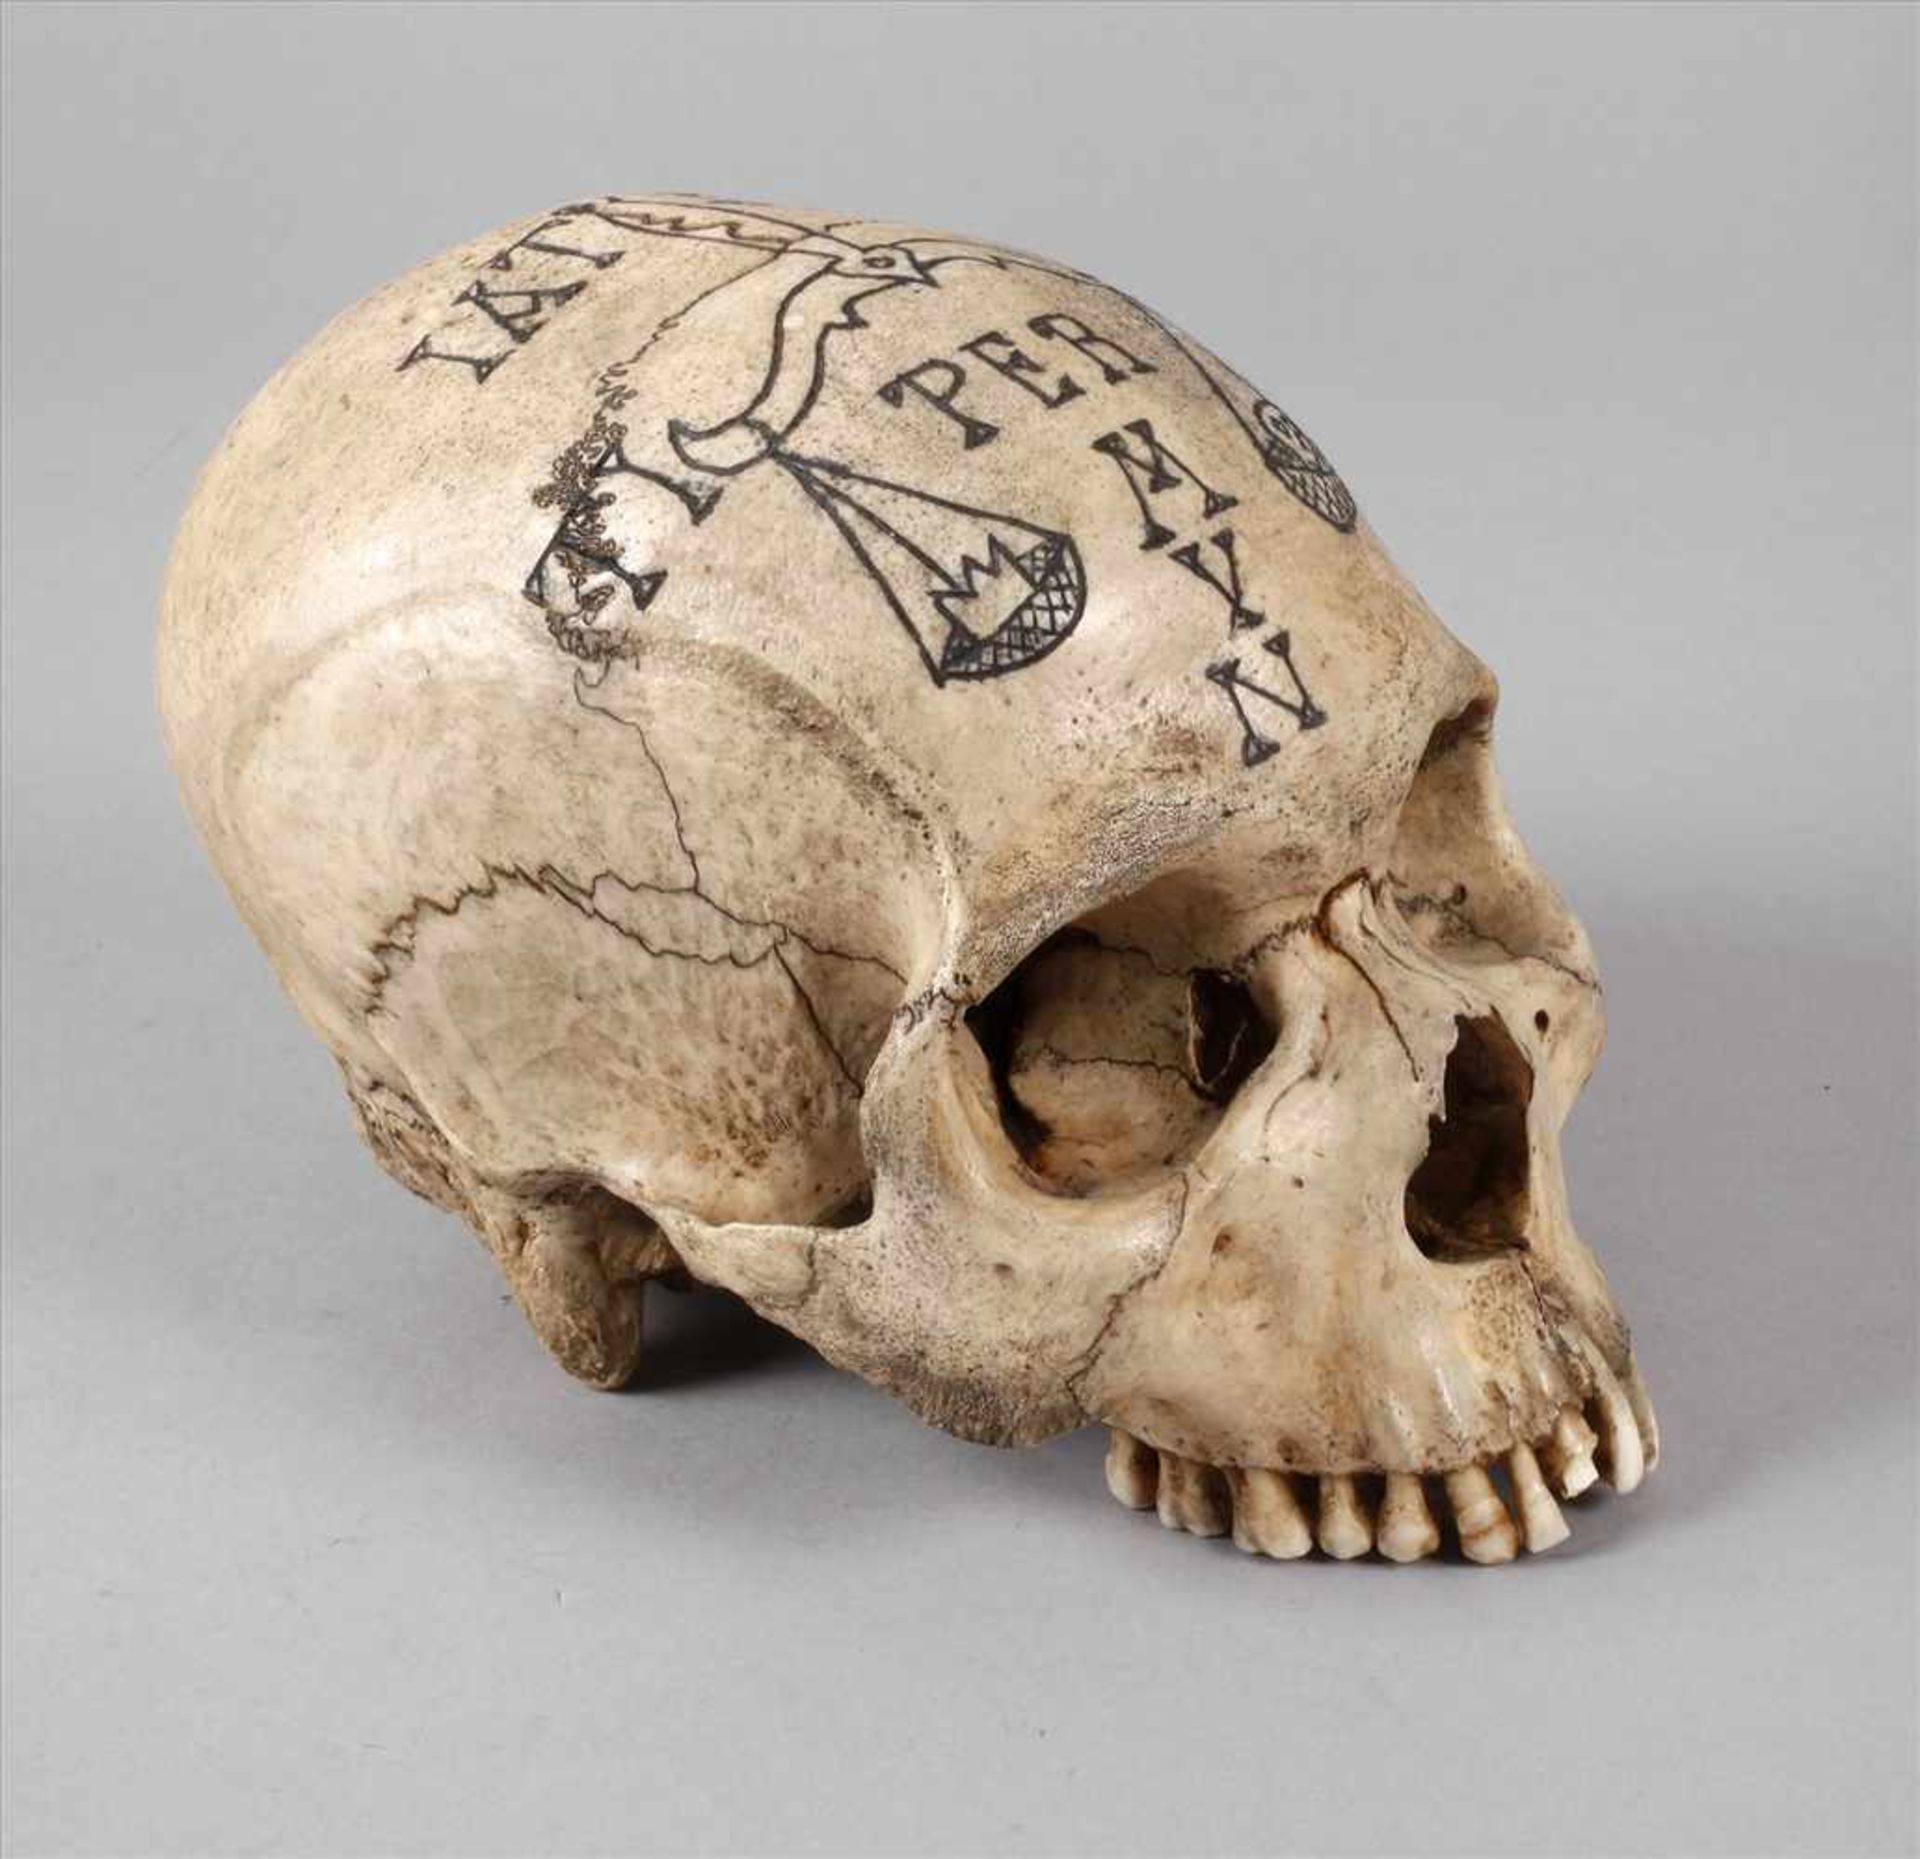 Memento Moriwohl 19. Jh., präparierter menschlicher Schädel, mit Brandmalerei verziert und